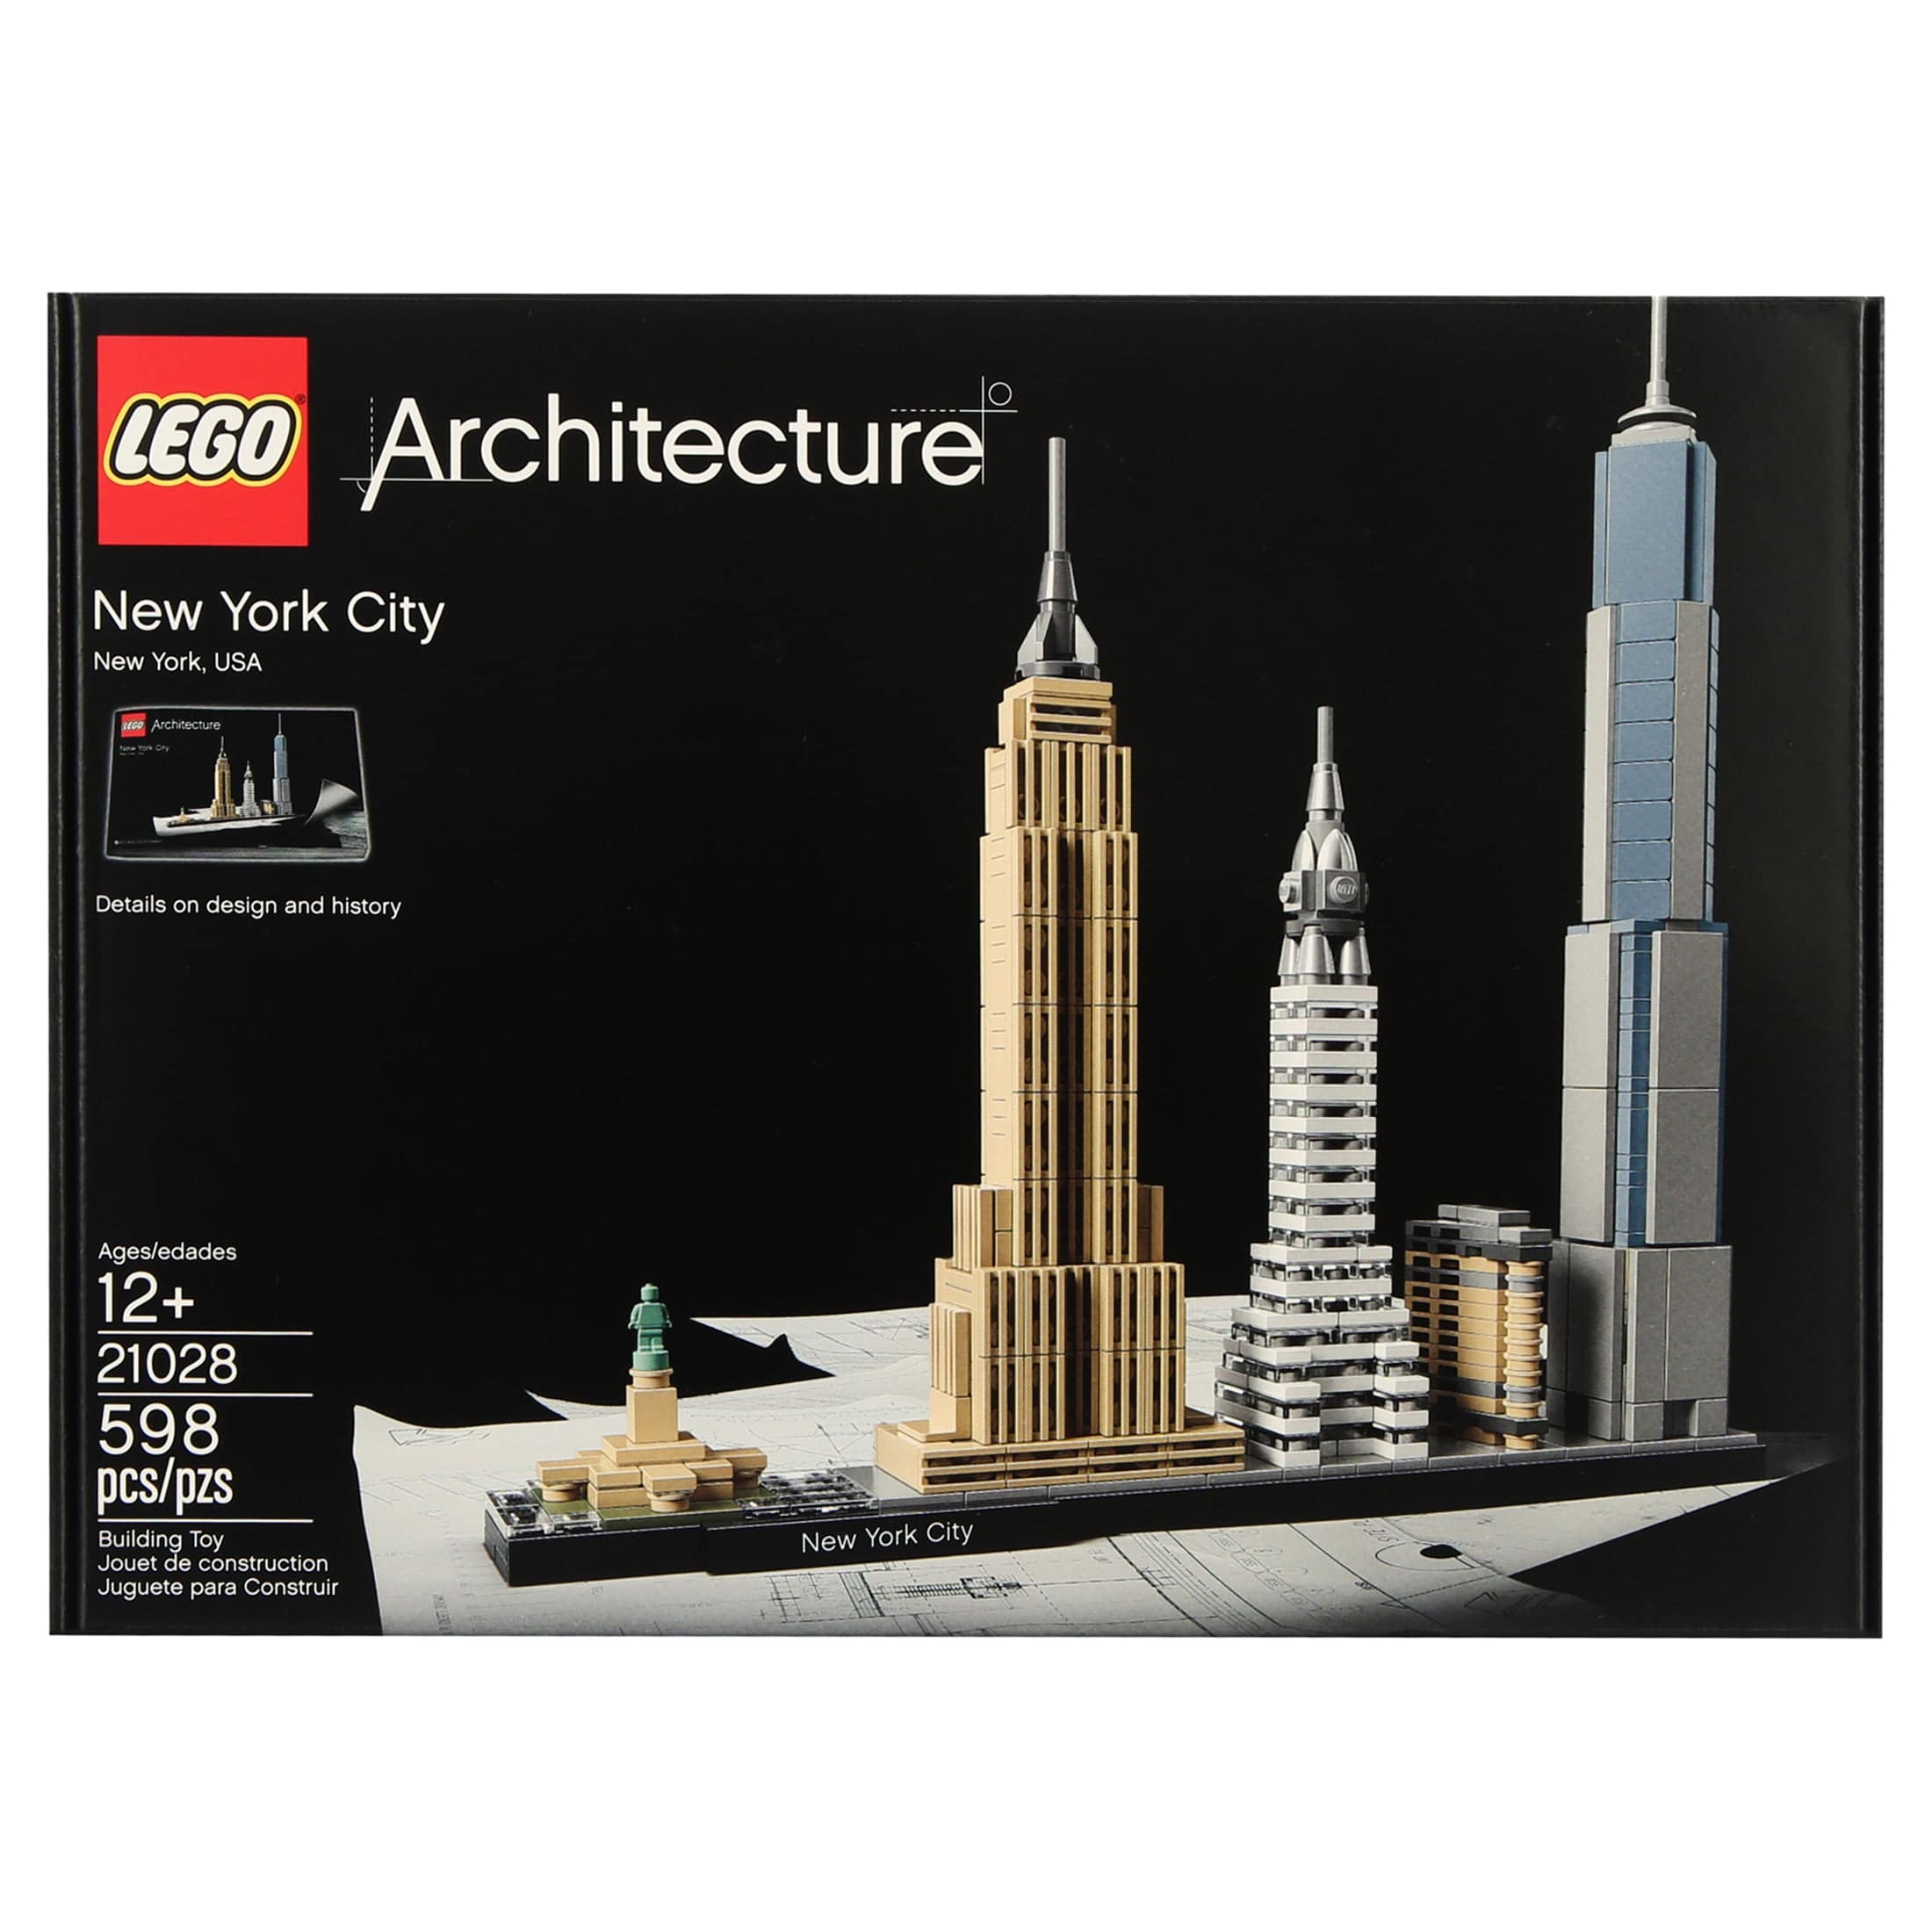 LEGO Architecture 21044 PARIS / 21028 NEW YORK